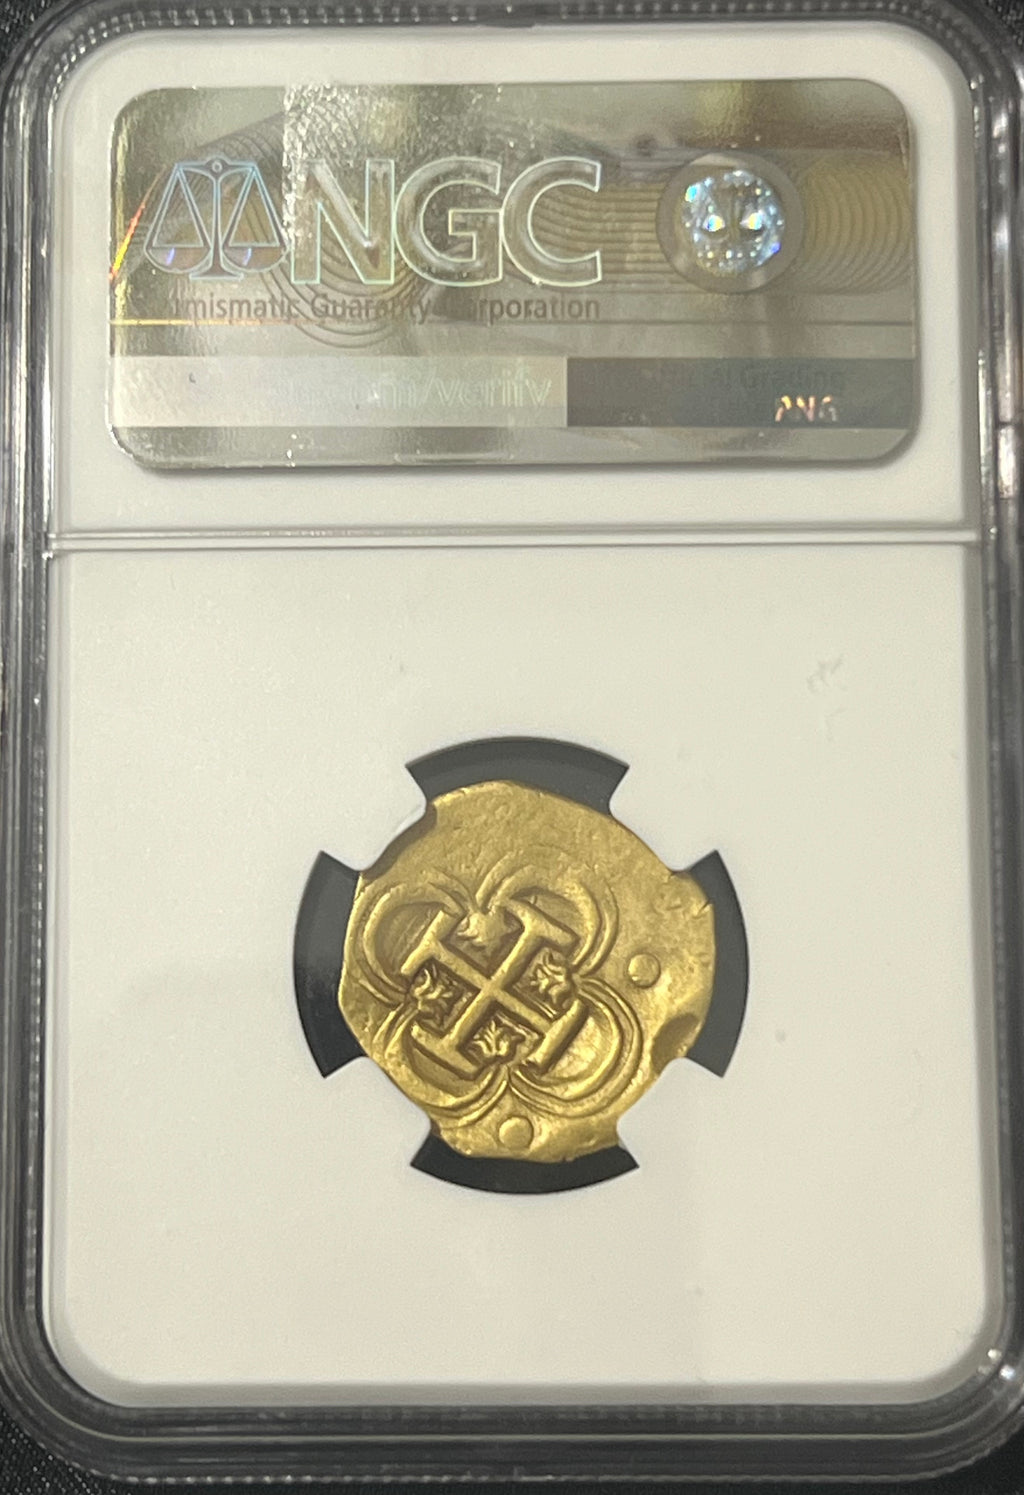 2 Escudos Seville, Spain Gold Coin NGC Grade XF Details